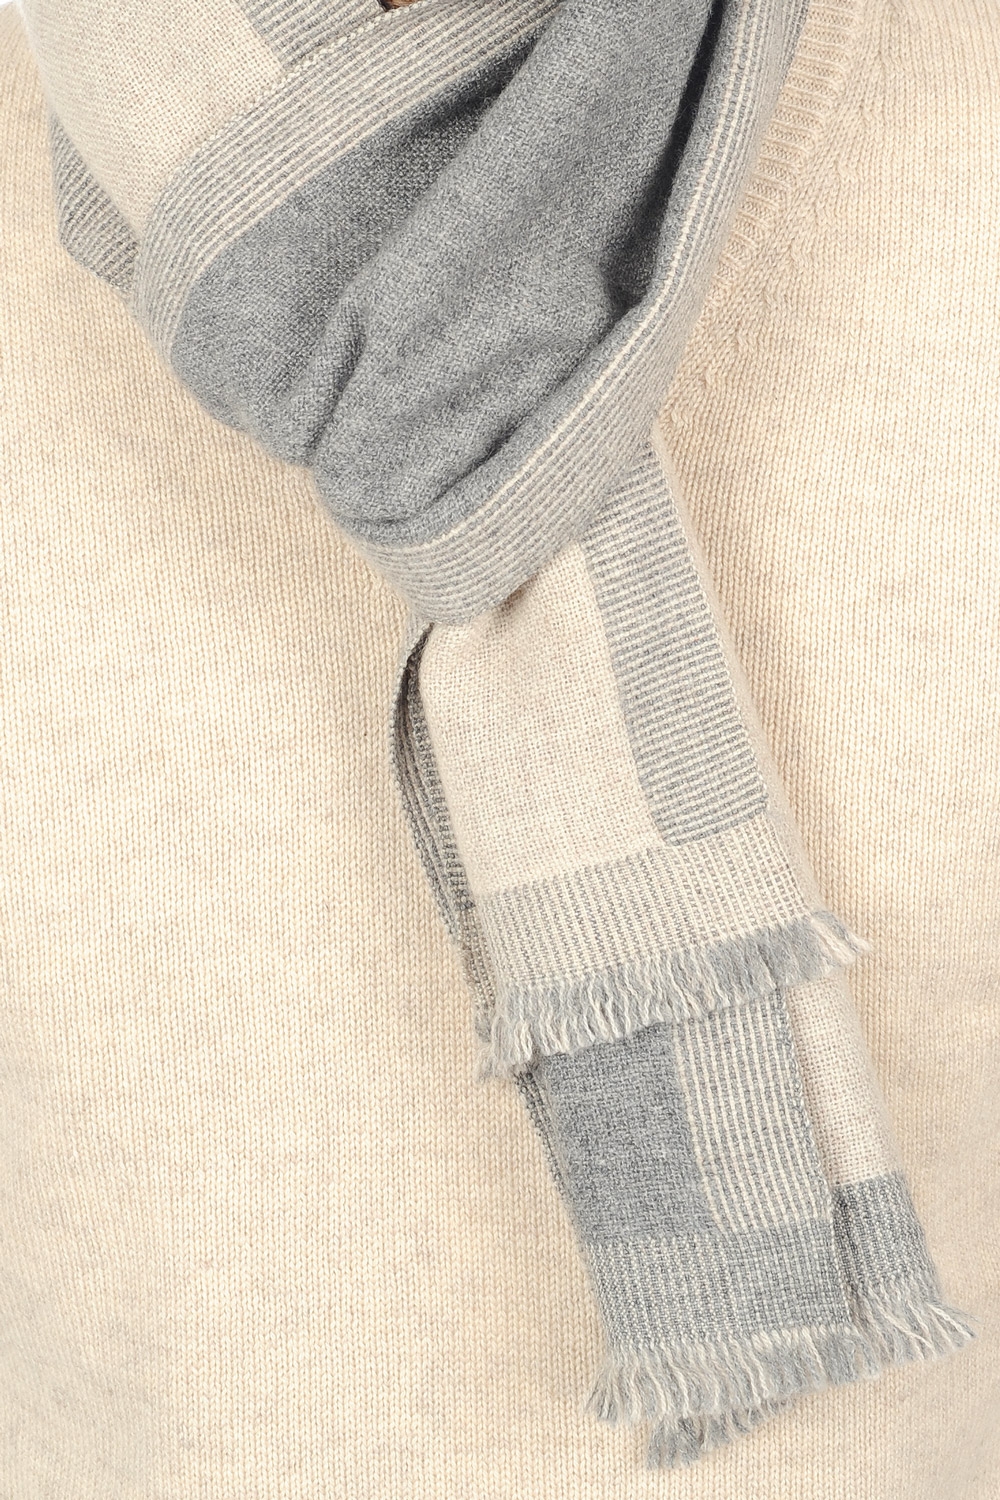 Cachemire accessoires tonnerre gris chine beige intemporel 180 x 24 cm